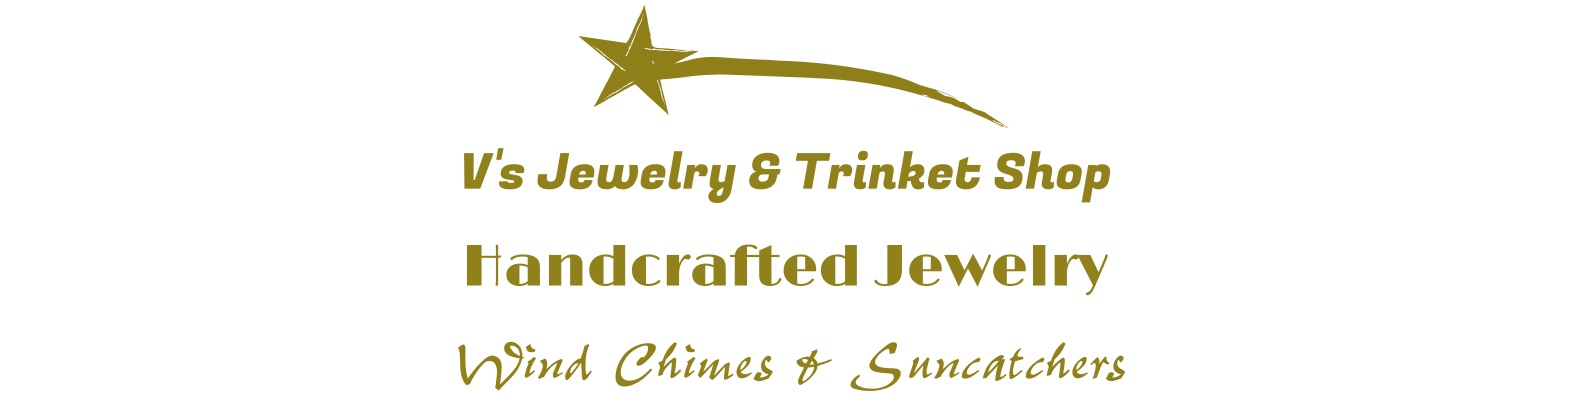 V’s Jewelry & Trinkets Shop